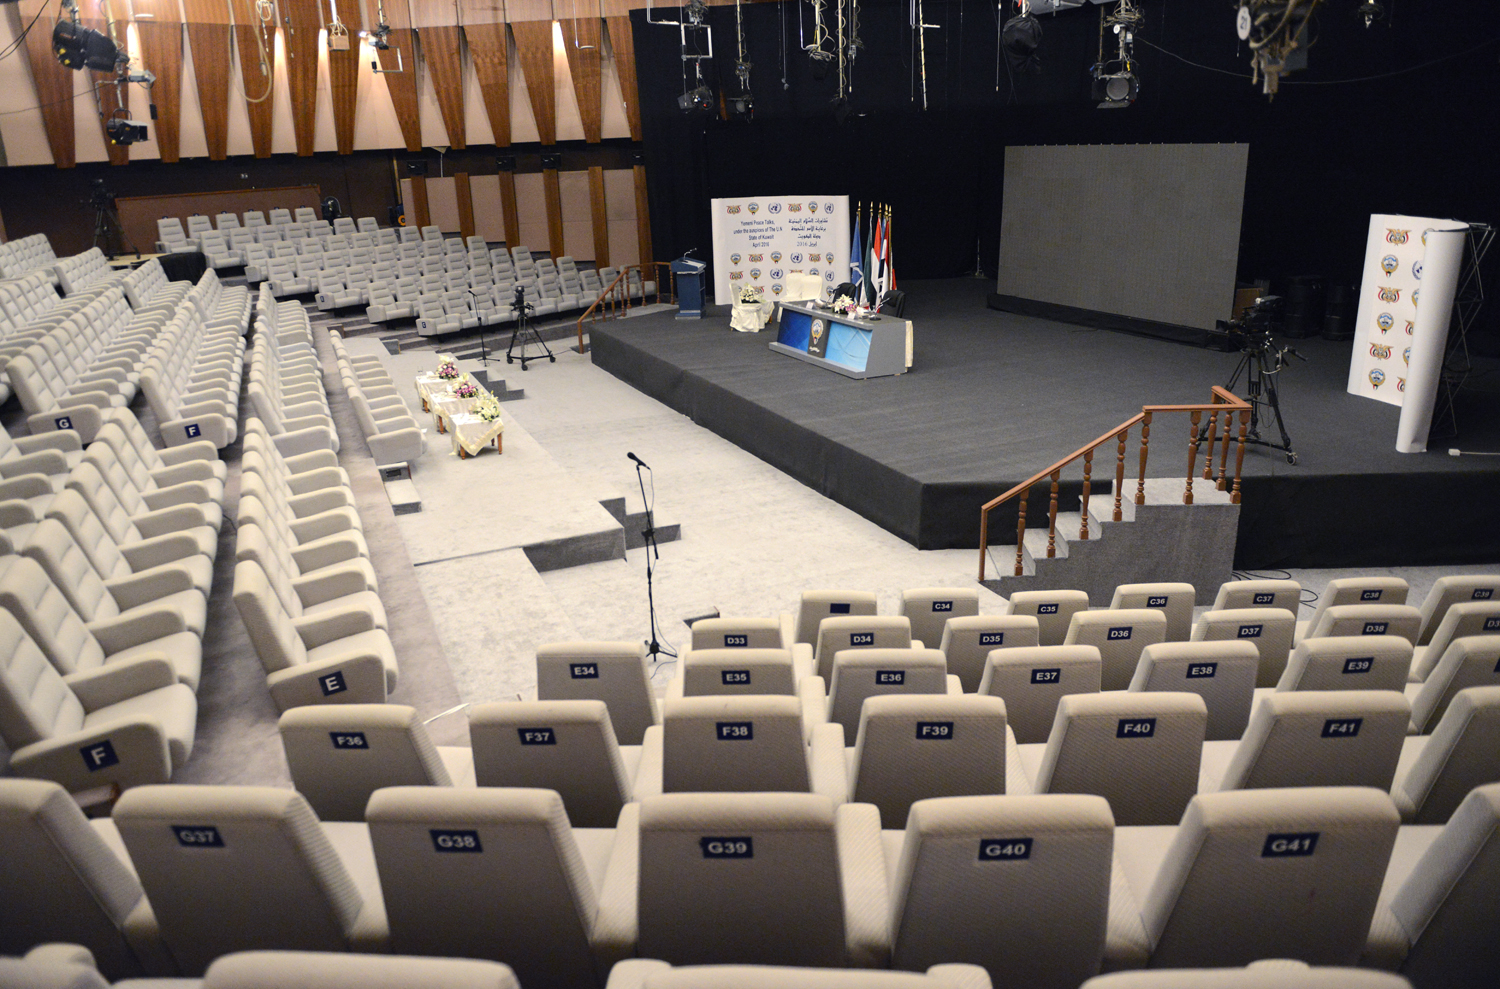 مسرح حمد الرومي بالكويت موقع حيوي حاضن لمناسبات وطنية ومؤتمرات صحفية